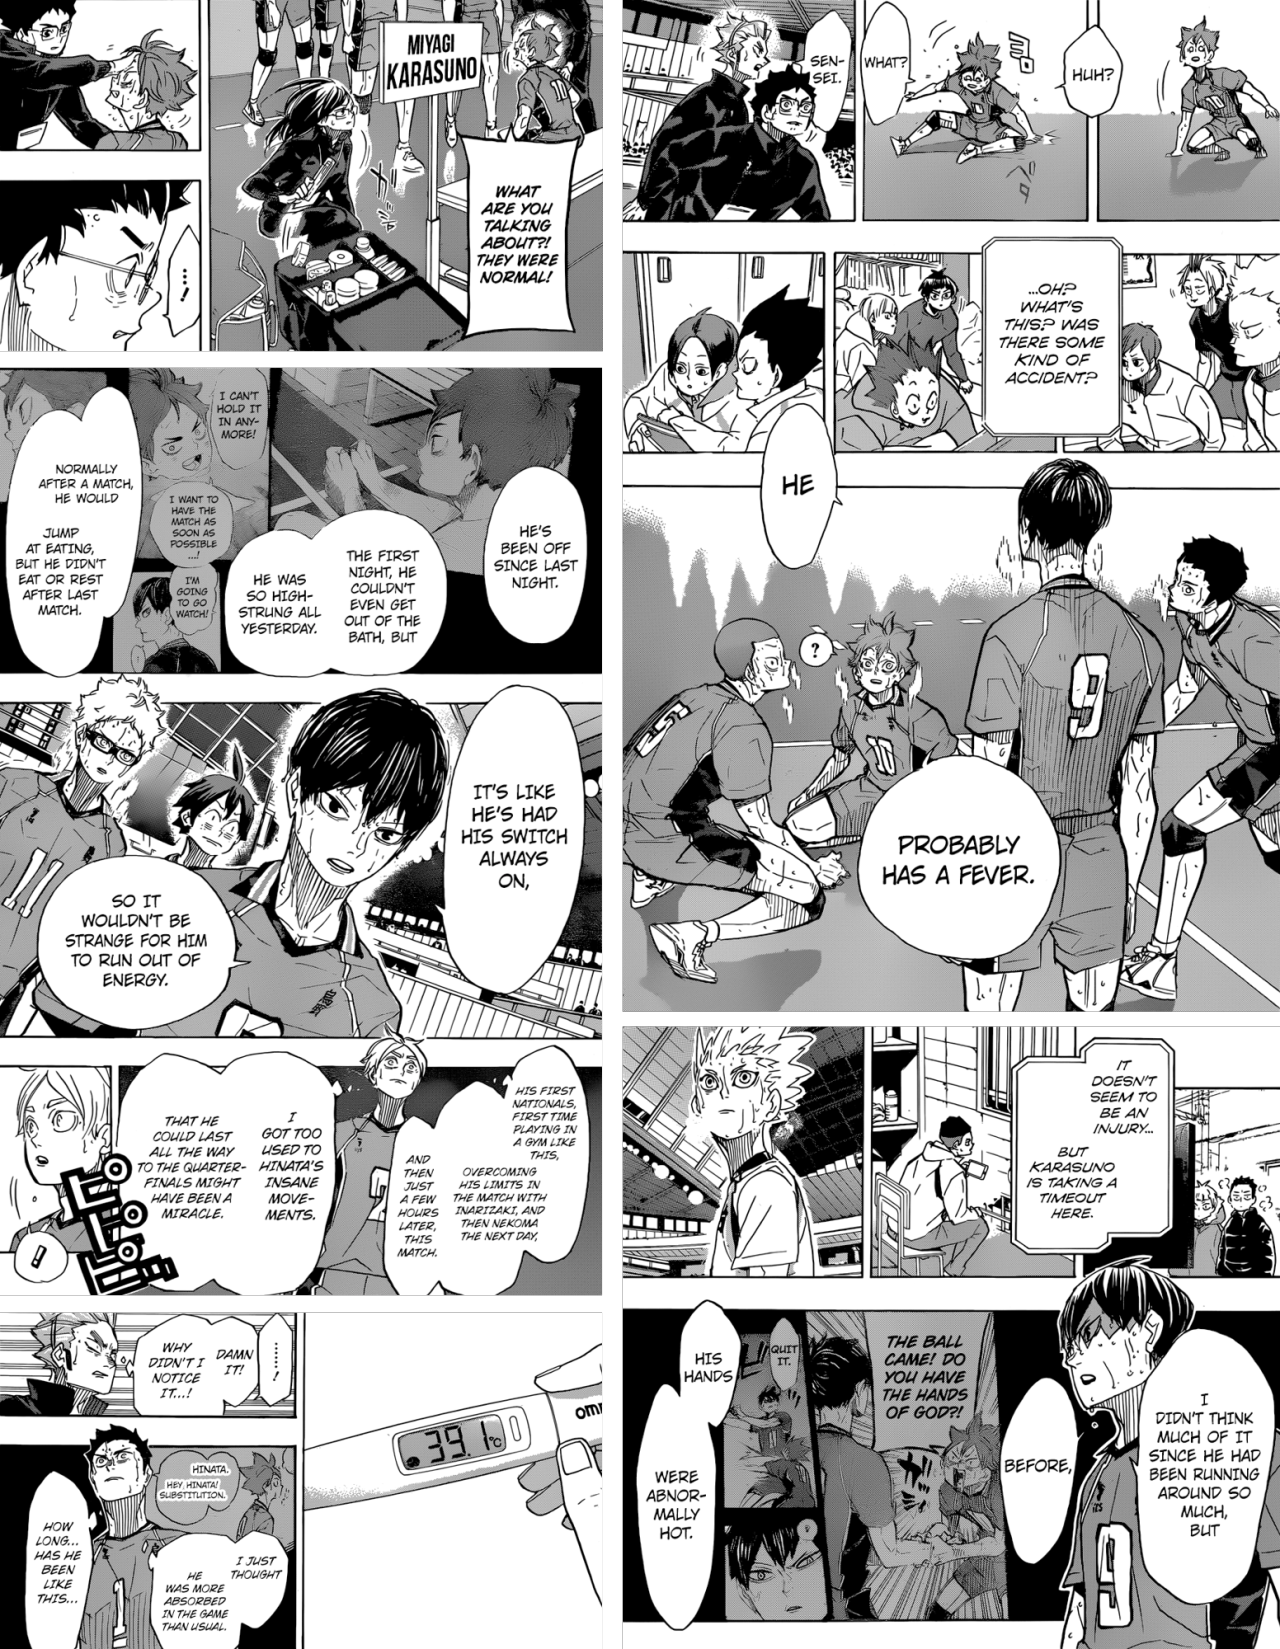 Haikyuu!!, Chapter 365 - Endings and Beginnings 2 - Haikyuu!! Manga Online